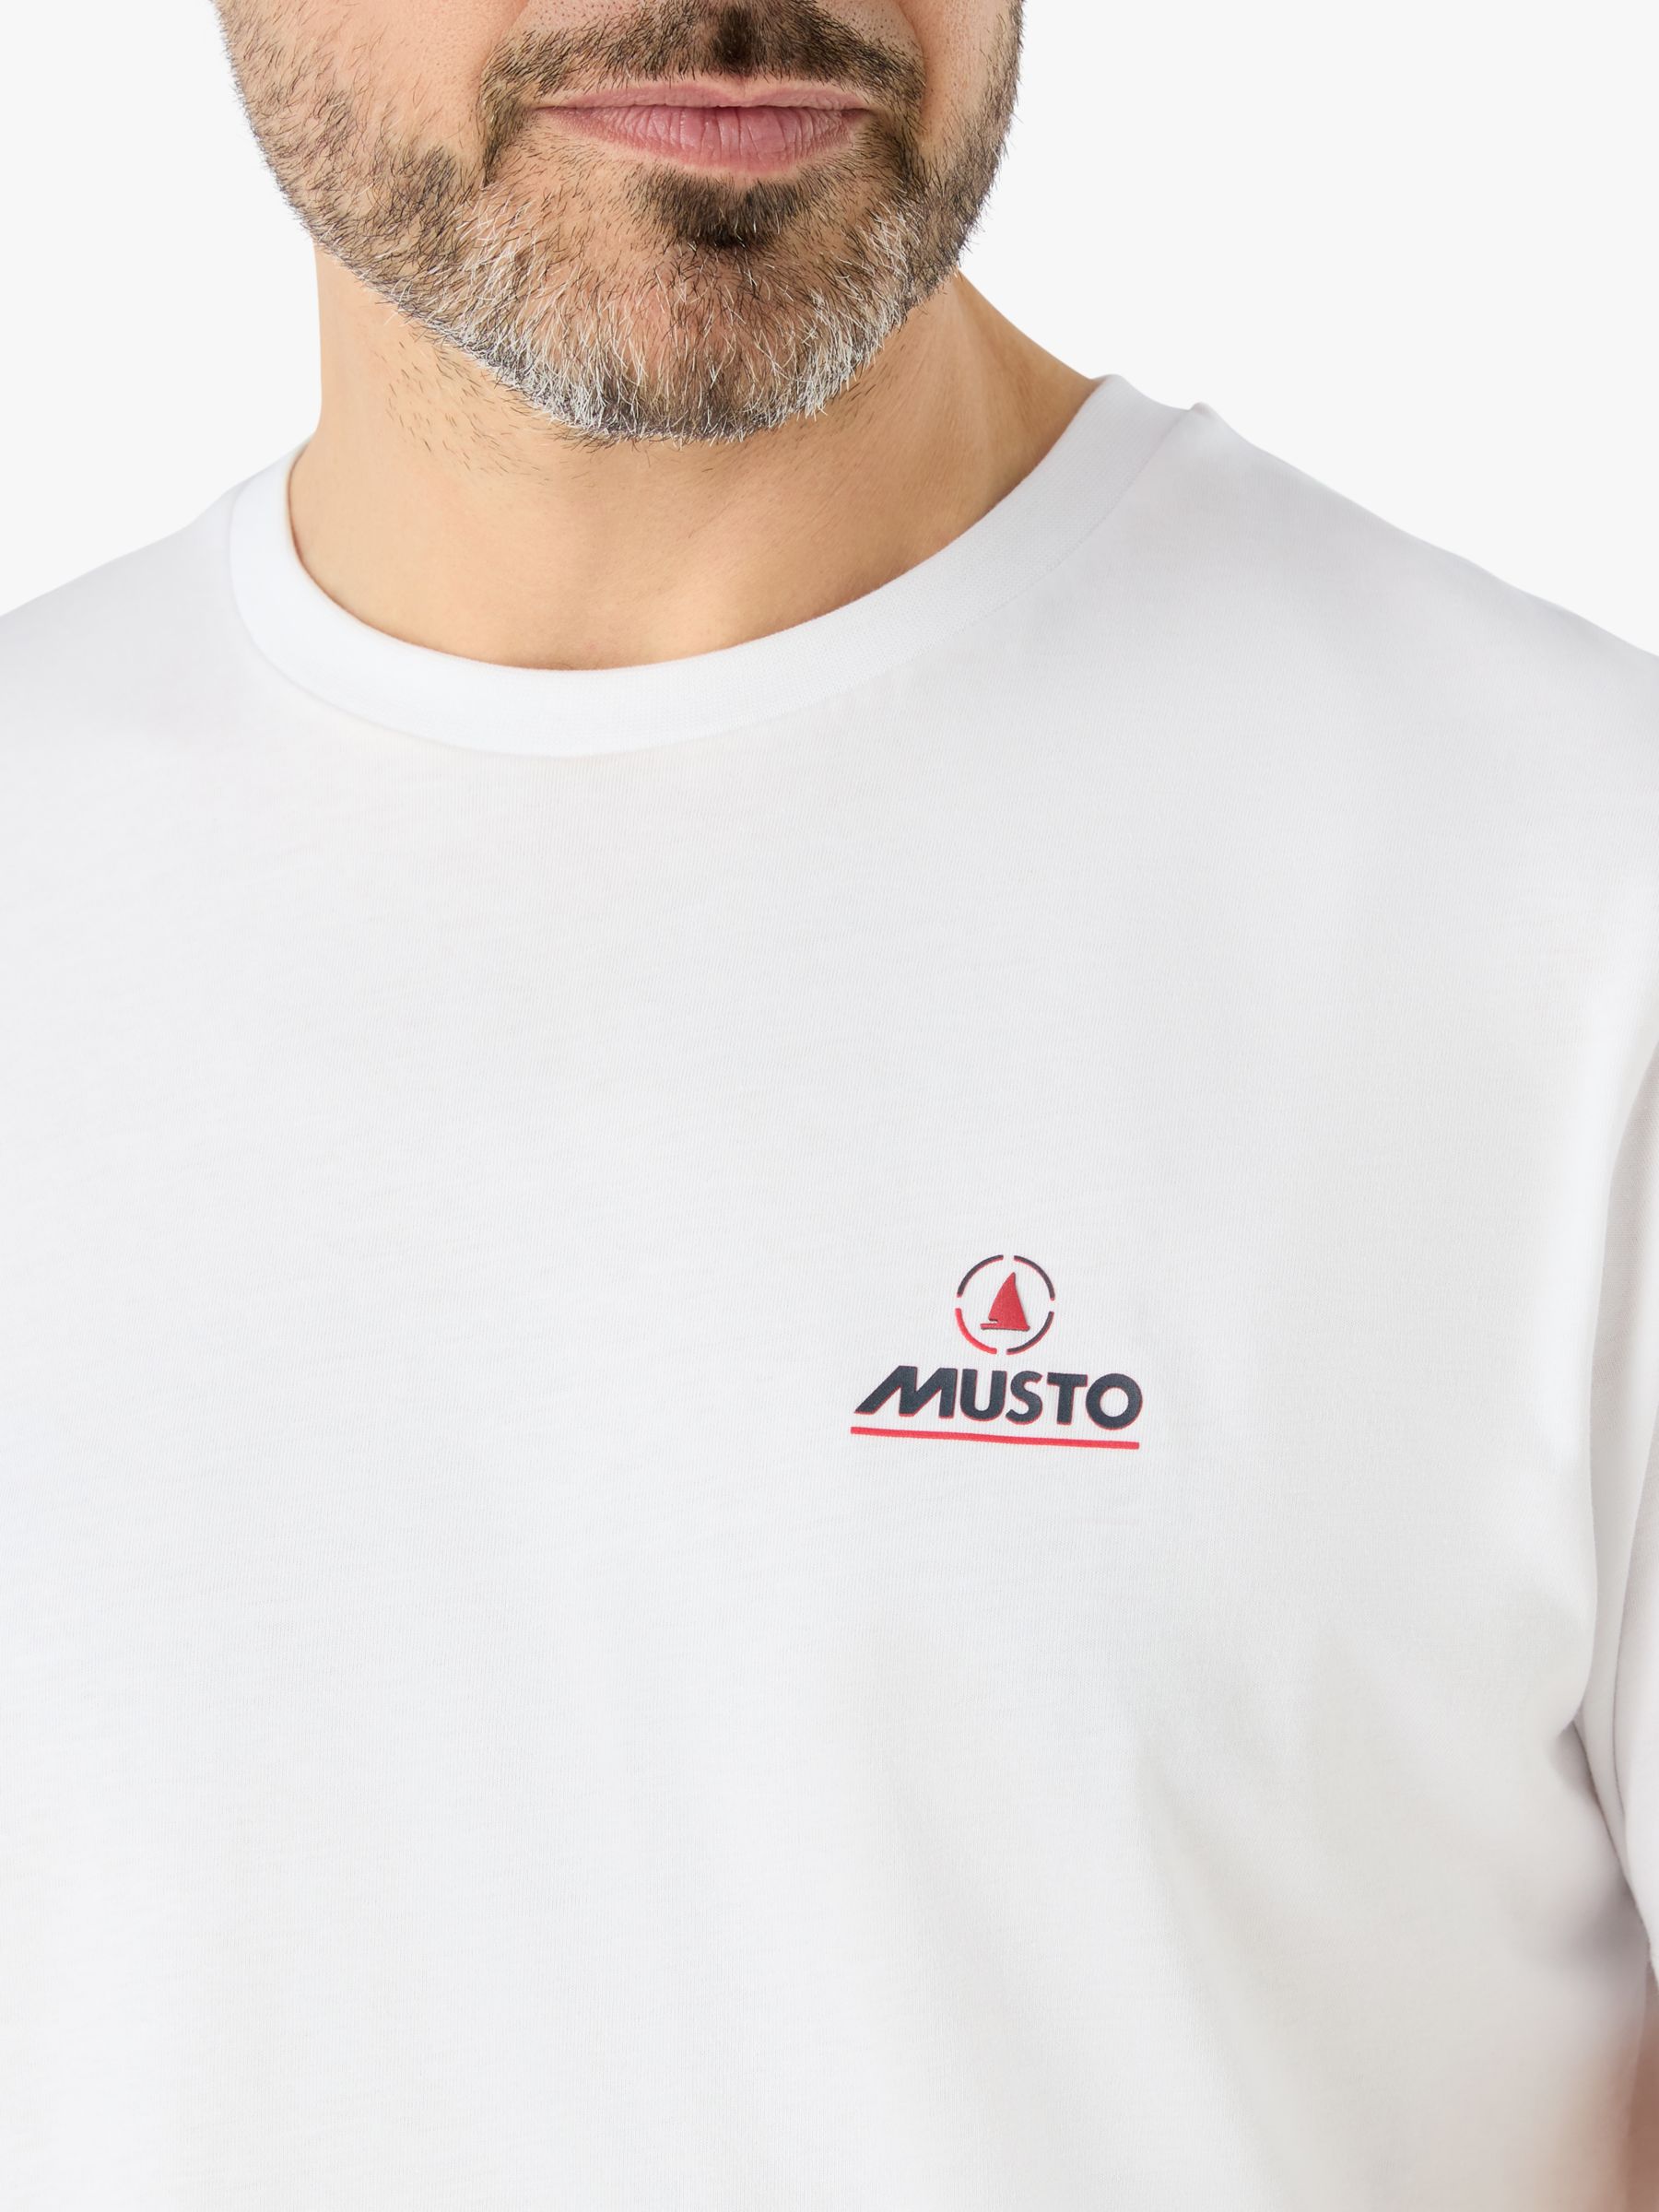 Musto Nautical Short Sleeve T-Shirt, White, M